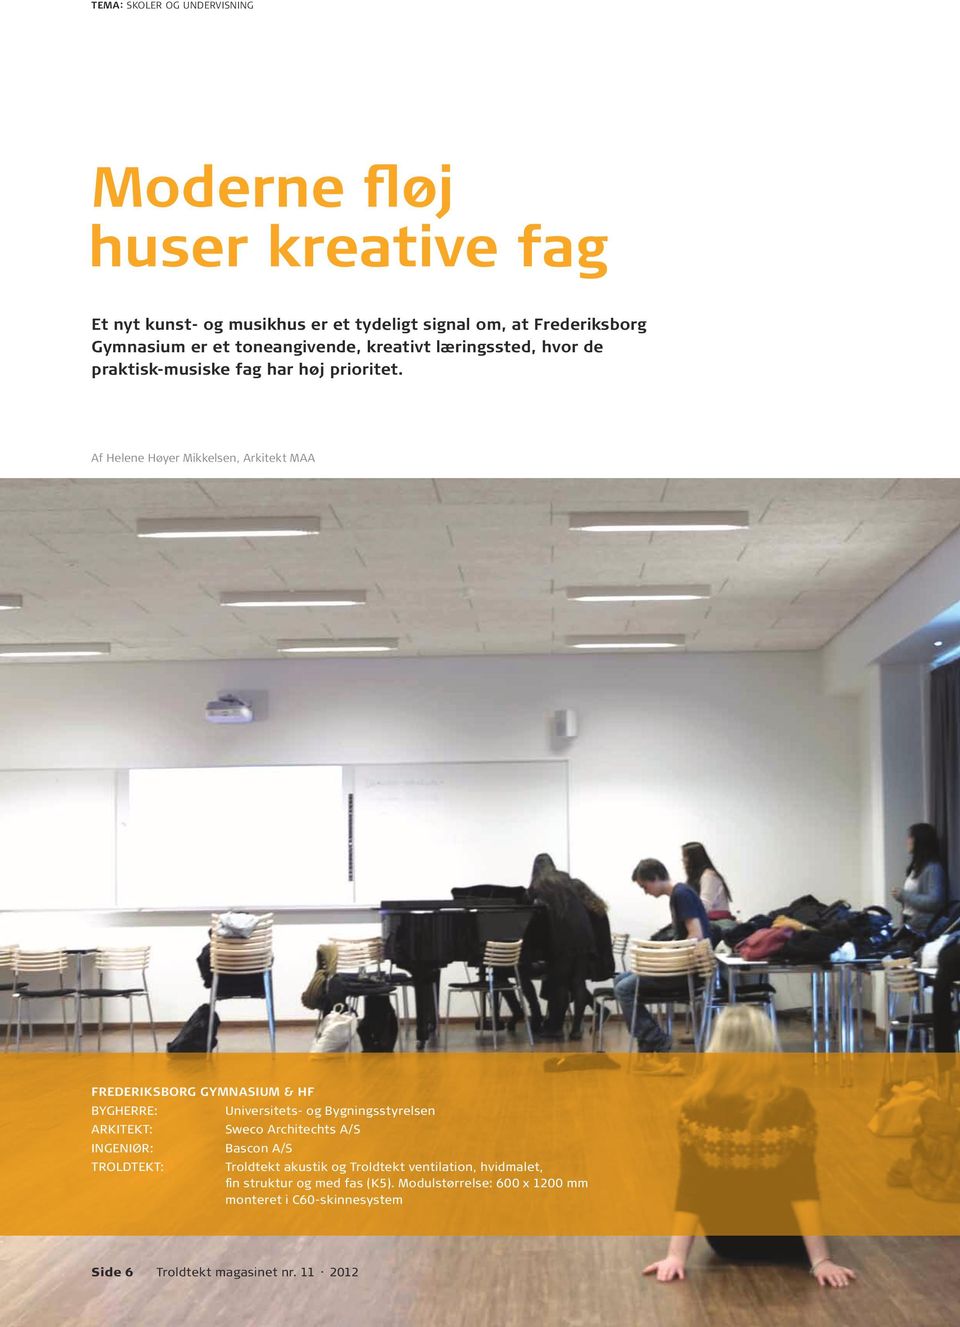 Af Helene Høyer Mikkelsen, Arkitekt MAA FREDERIKSBORG GYMNASIUM & HF BYGHERRE: Universitets- og Bygningsstyrelsen ARKITEKT: Sweco